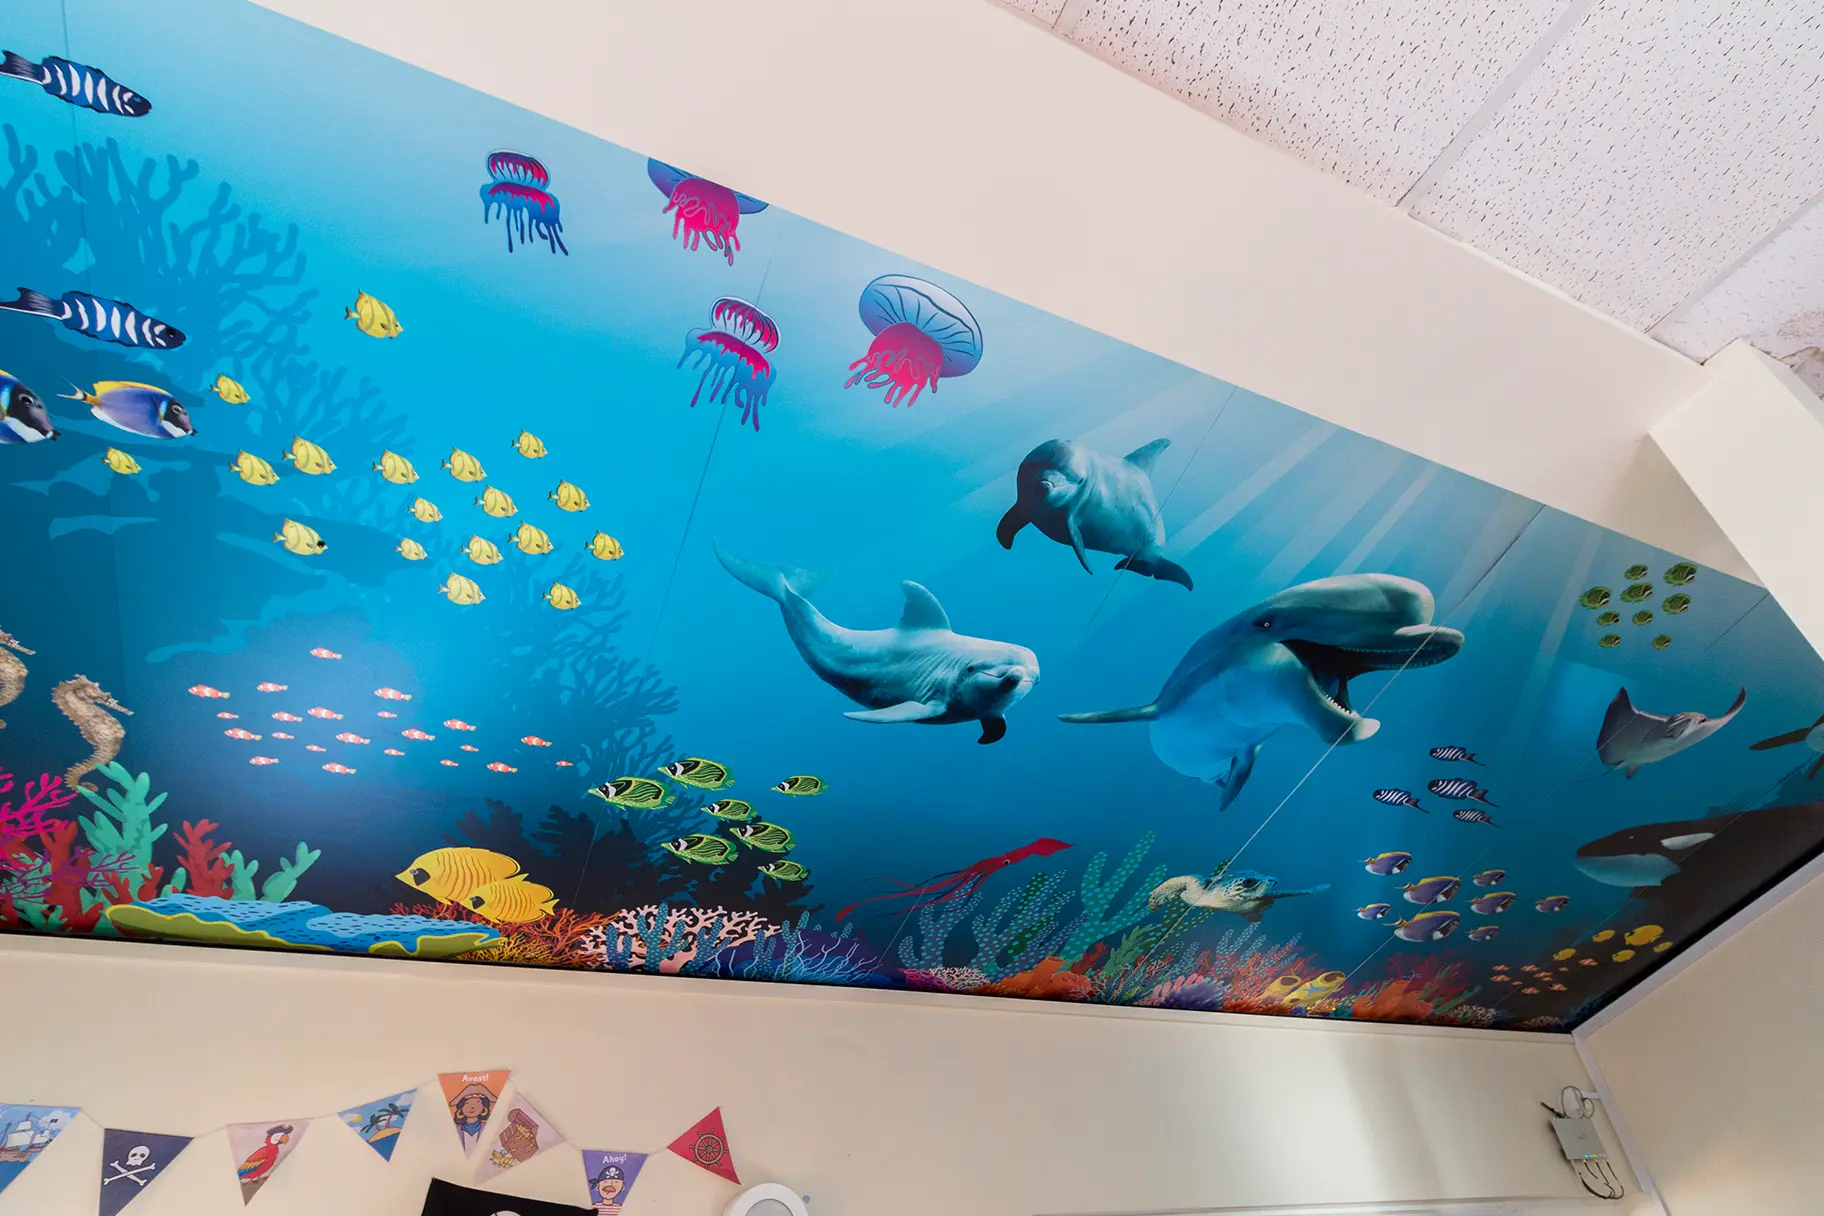 Wallisdean Infant Schools Aquatic themed ceiling wall art